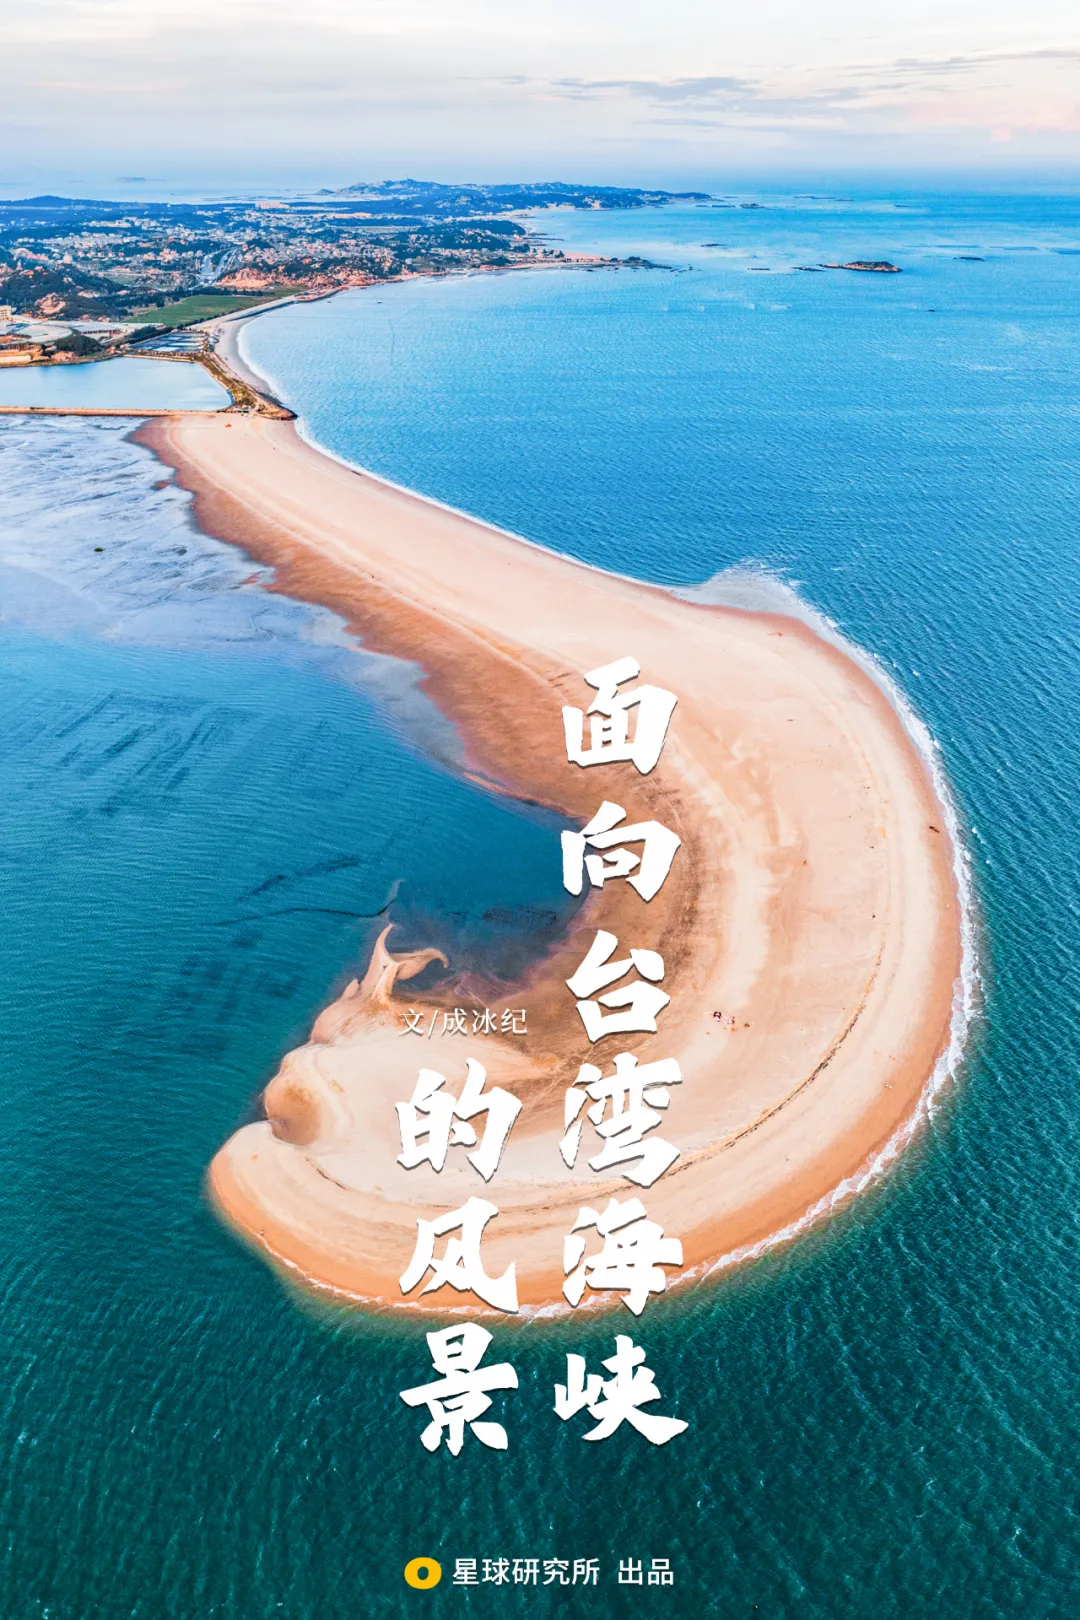 距台湾岛直线距离最近的地方只需一跨便可跨过海峡抵达宝岛台湾(平